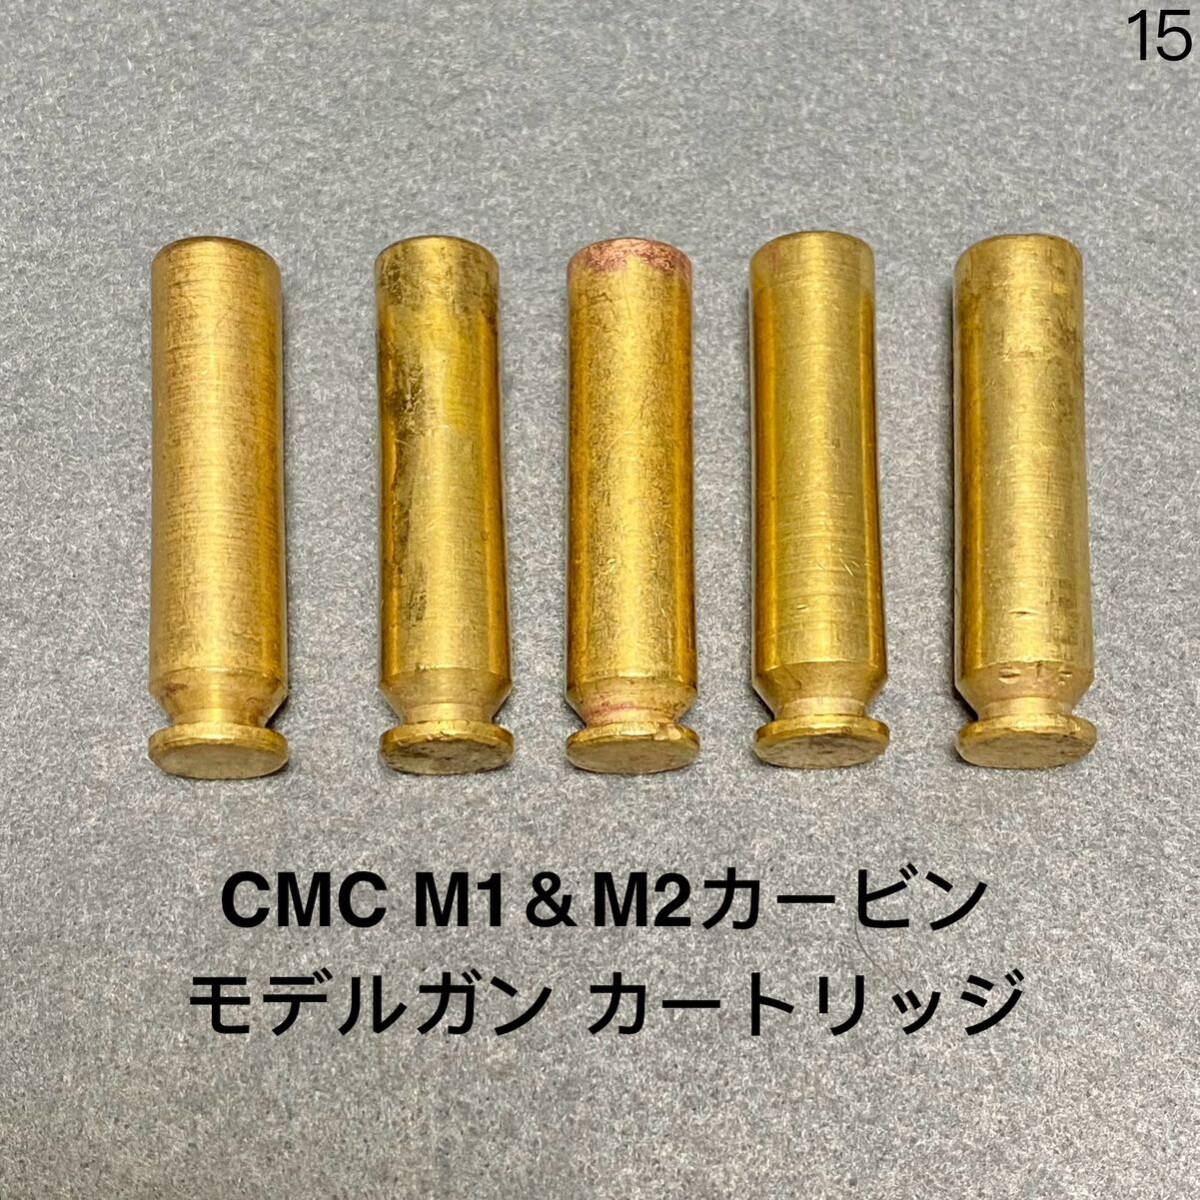 送料無料 5発 東京 CMC M1カービン M2カービン 前期型 オーペン カートリッジ モデルガン U.S. M1 CARBINE CAL.30 SMG 発火式 カート 15_画像1